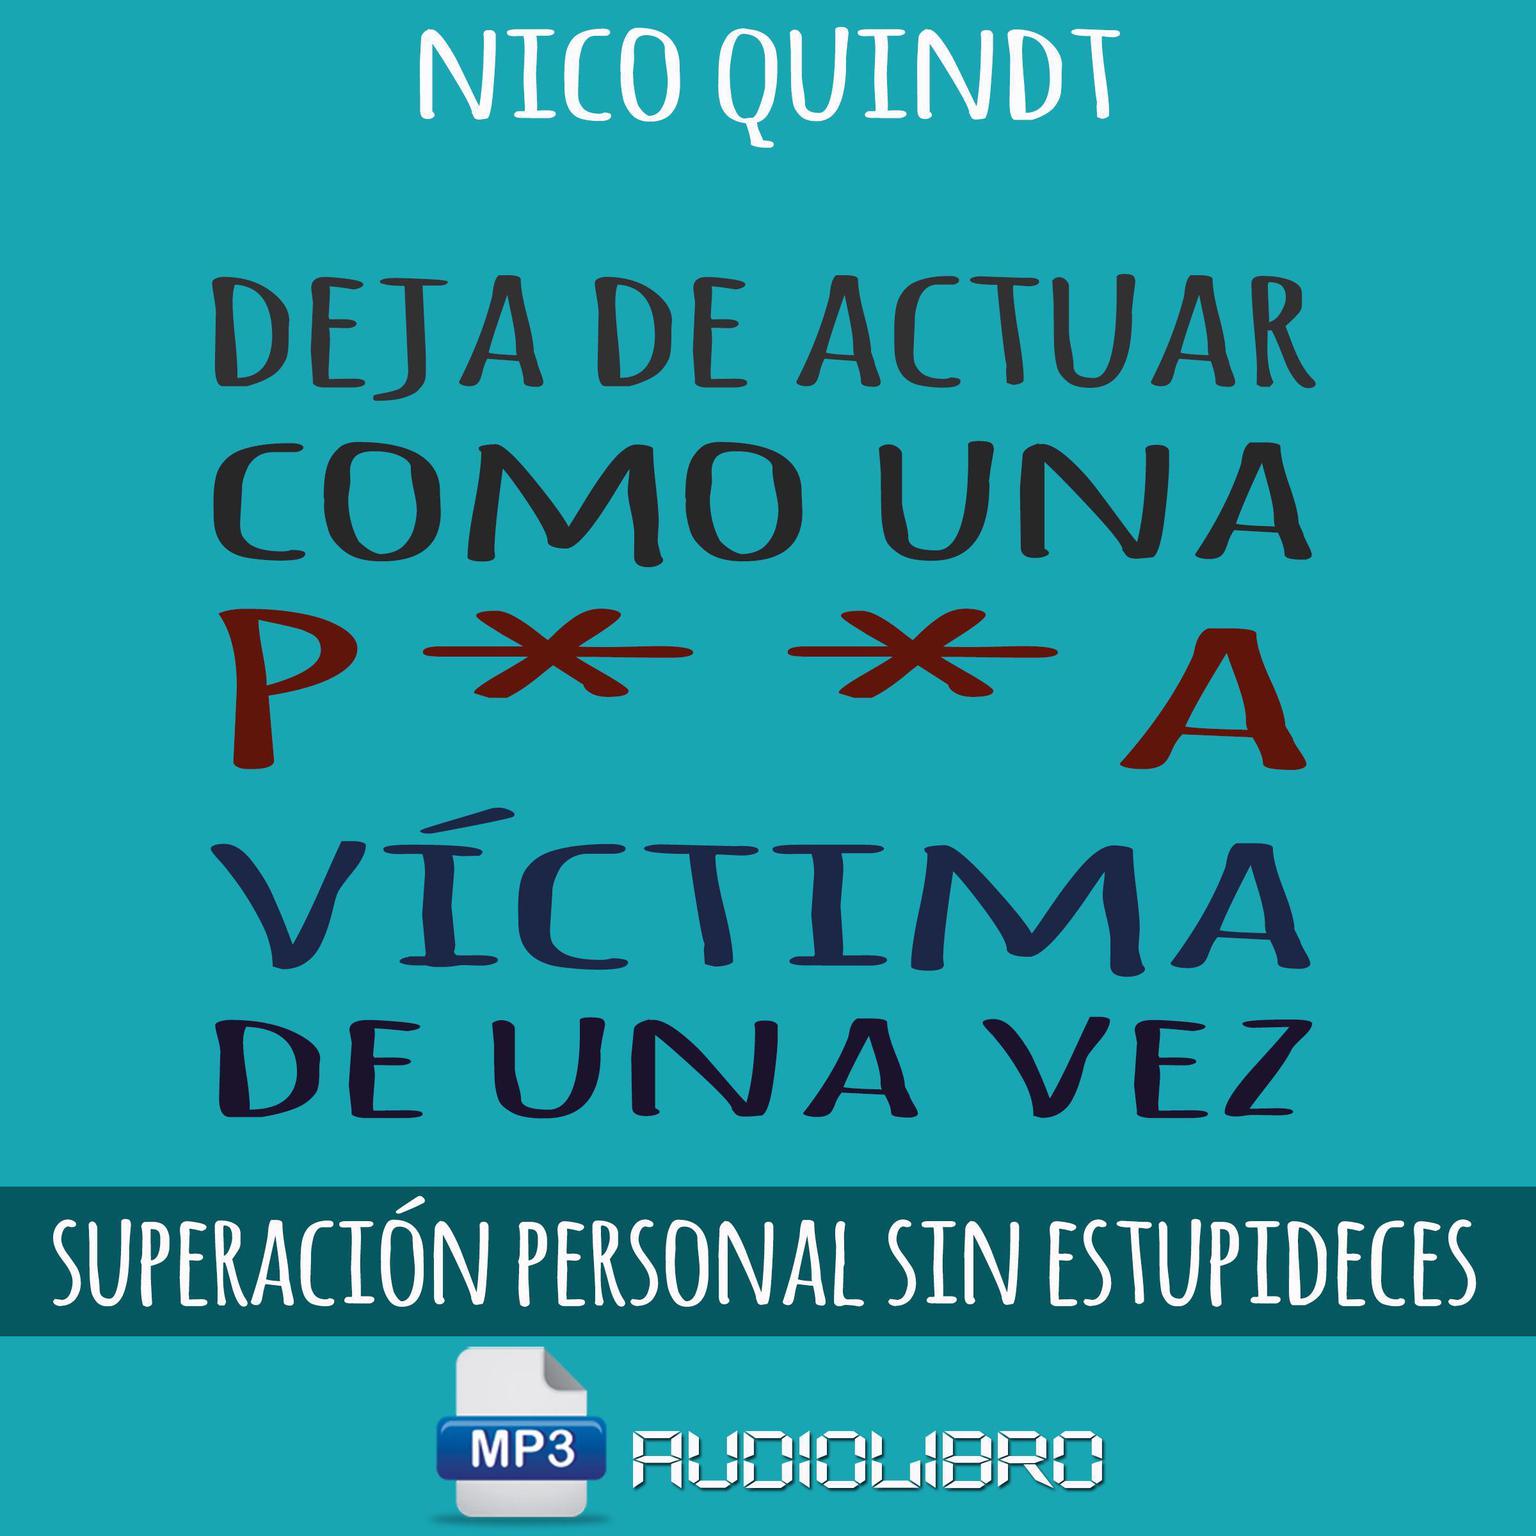 Deja De Actuar Como Una P**A Victima De Una Vez: Superación personal sin estupideces Audiobook, by Nico Quindt